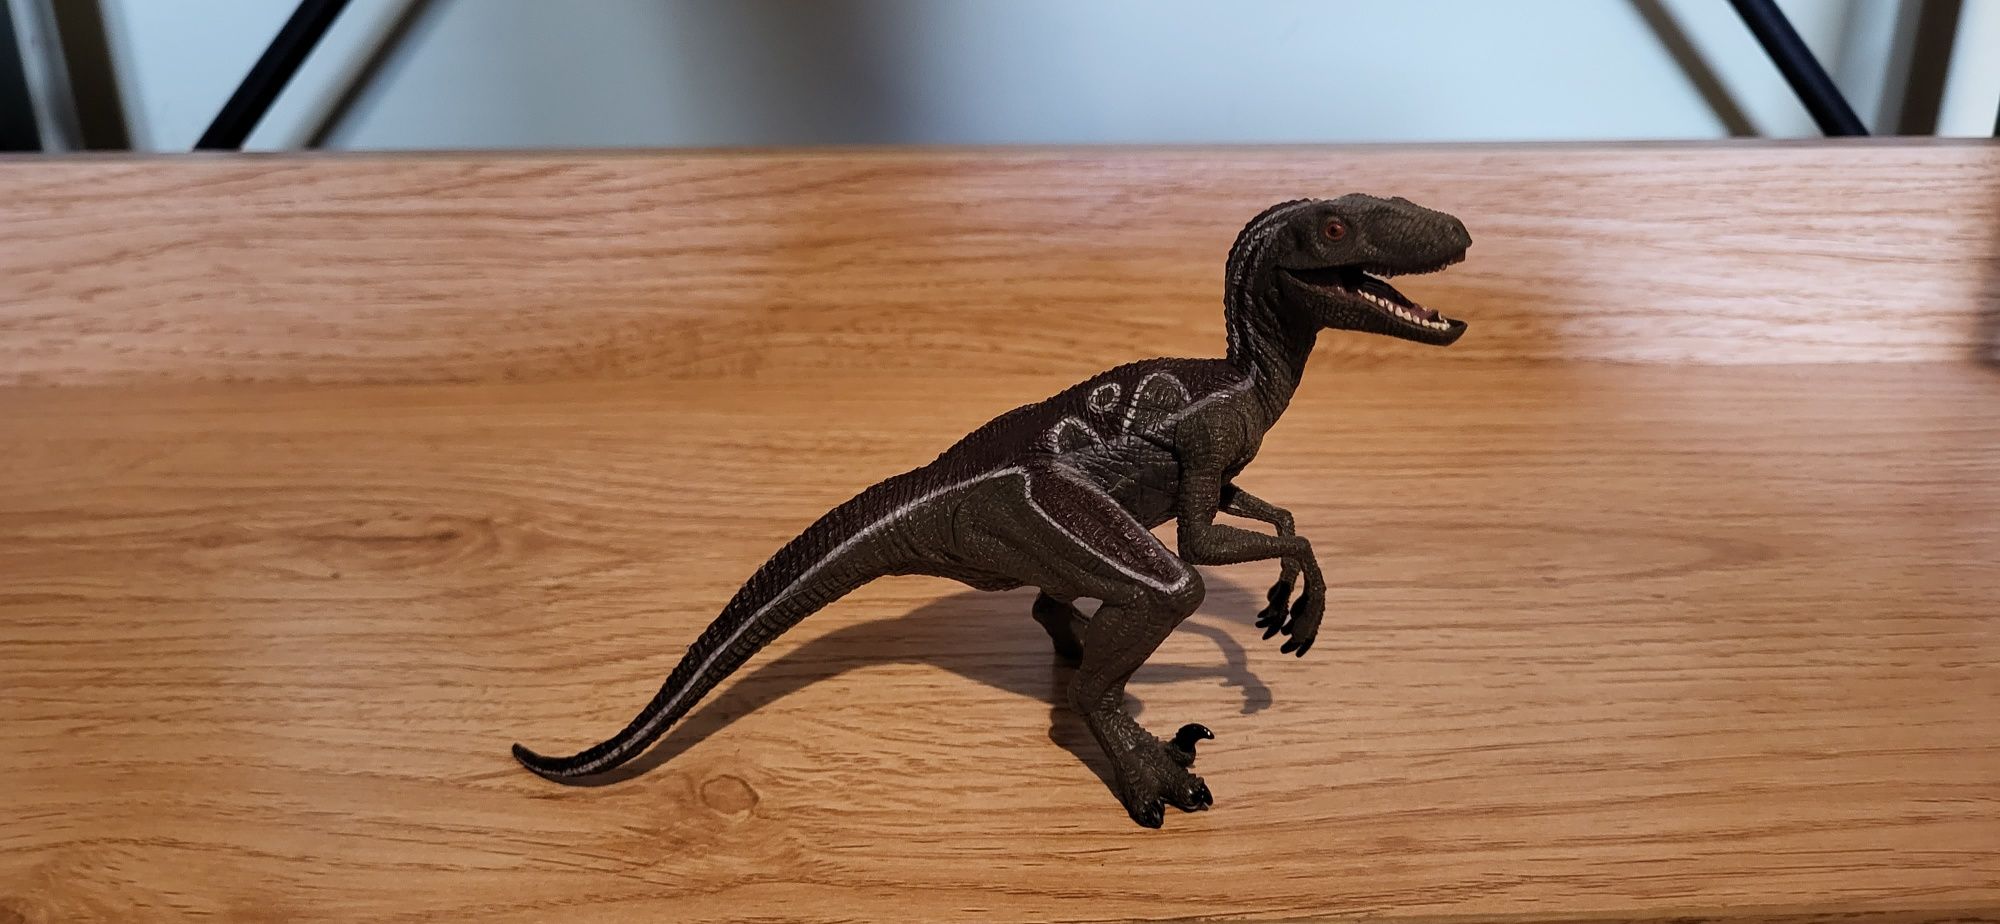 Papo dinozaur velociraptor figurki model z 2005 r.